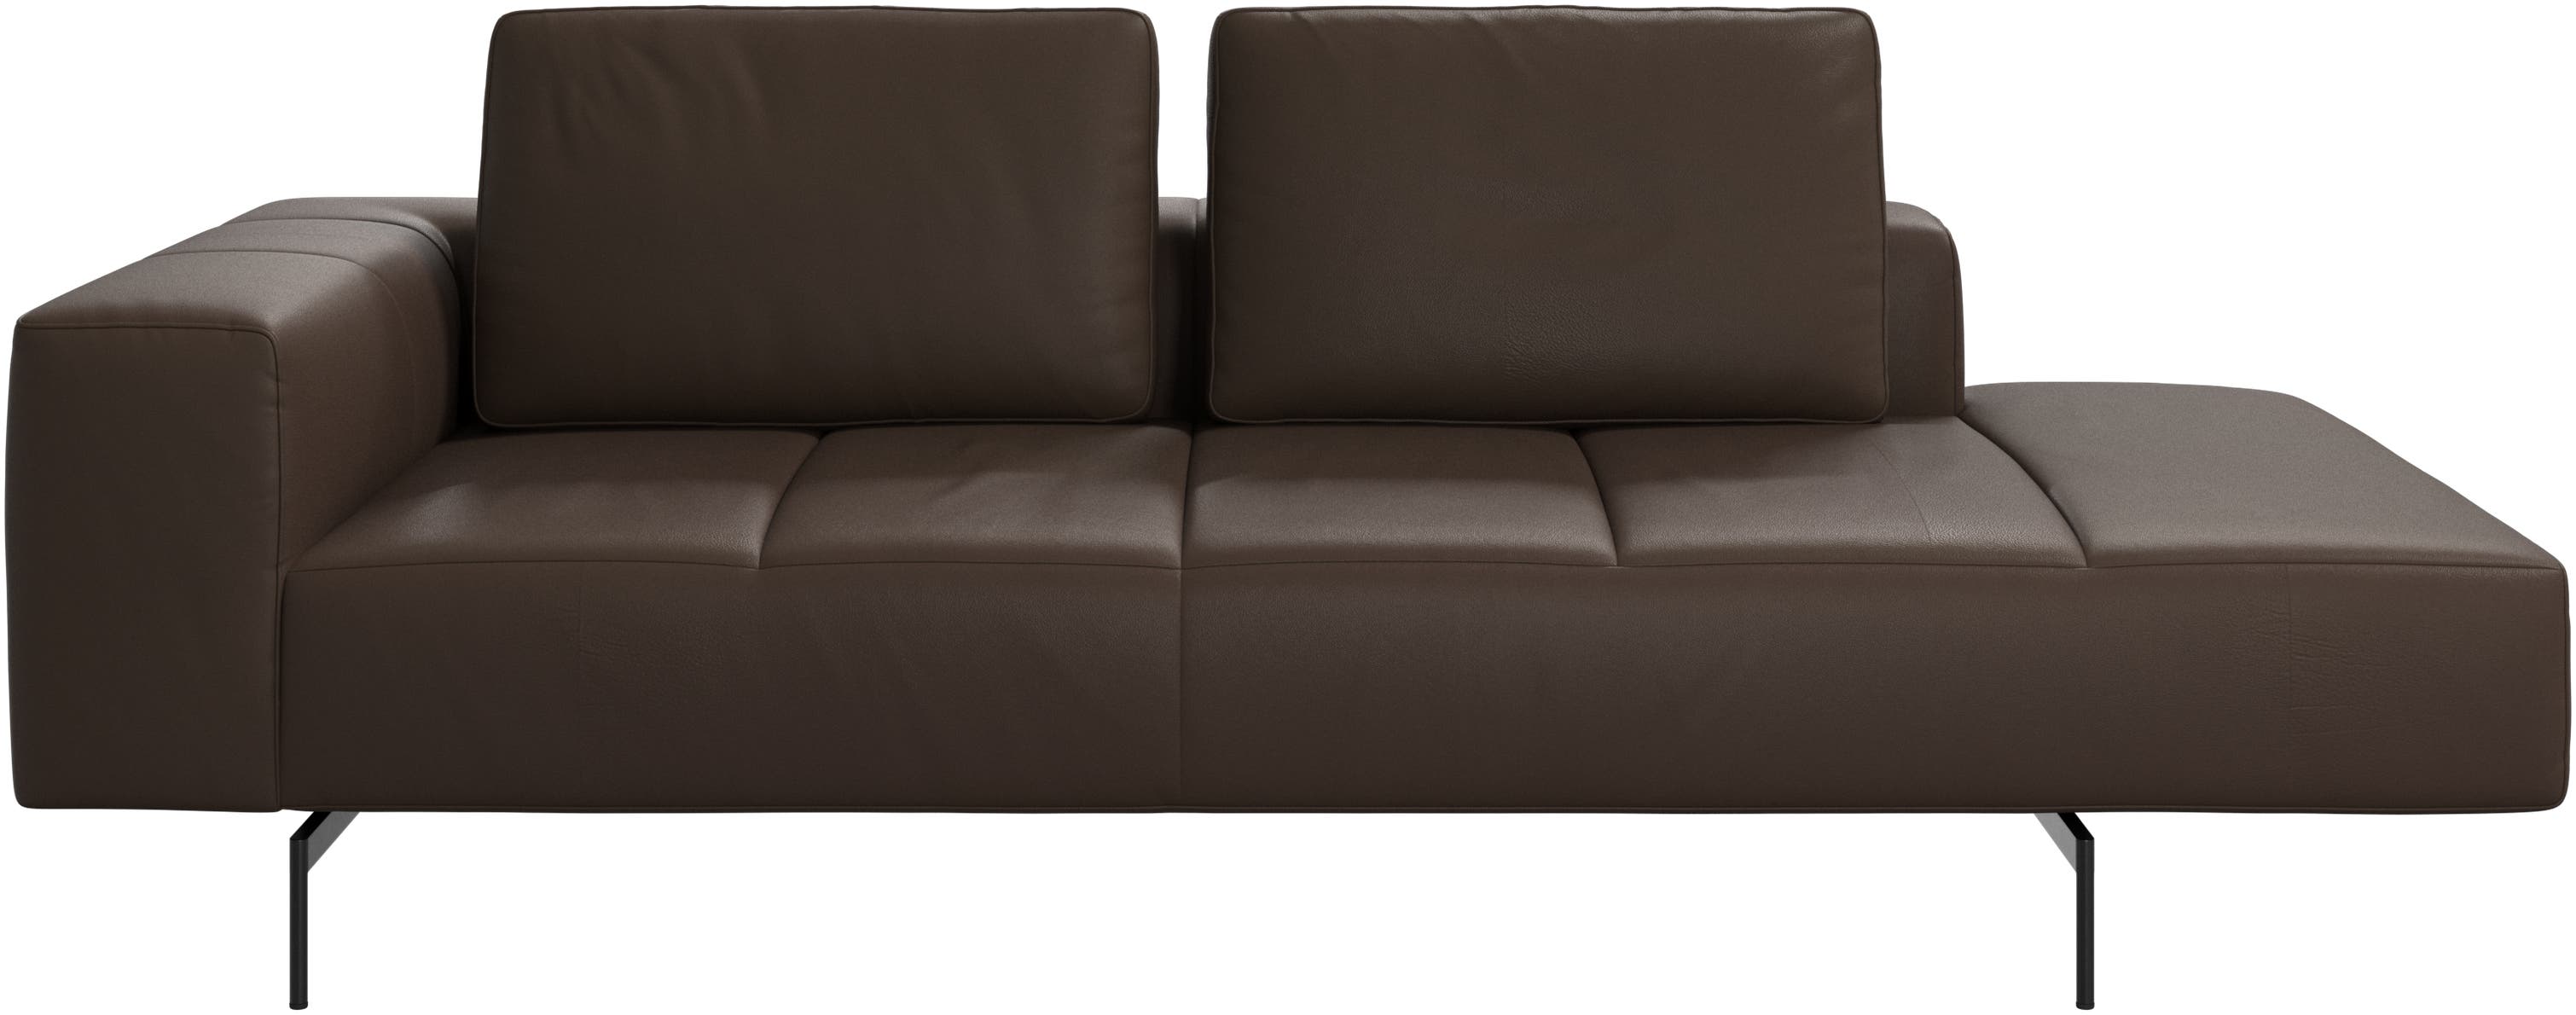 Amsterdam módulo de descanso para sofá, apoio de braço á esquerda, aberto á direita